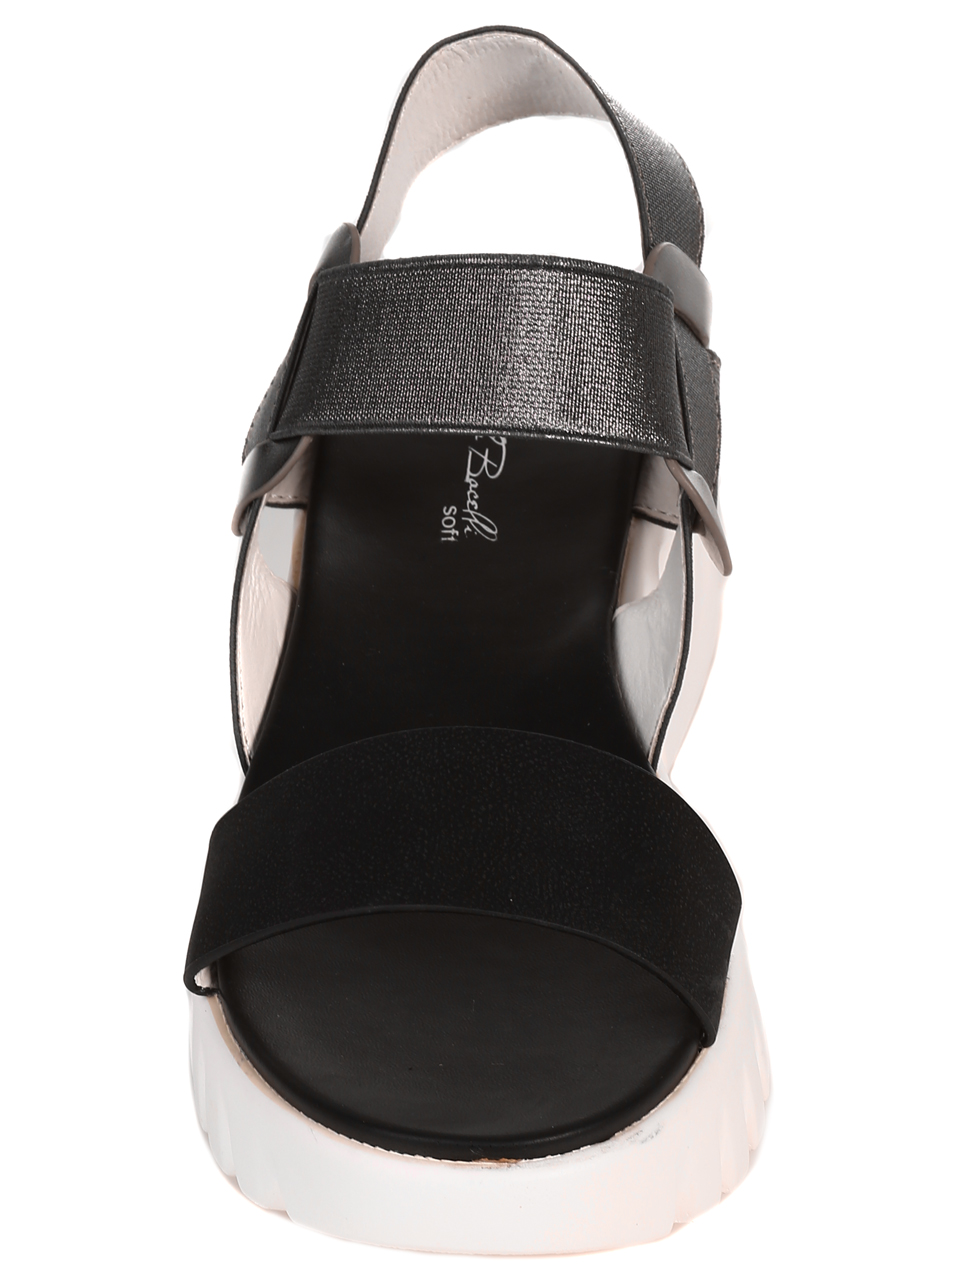 Ежедневни дамски комфортни сандали на платформа 4H-22241 black